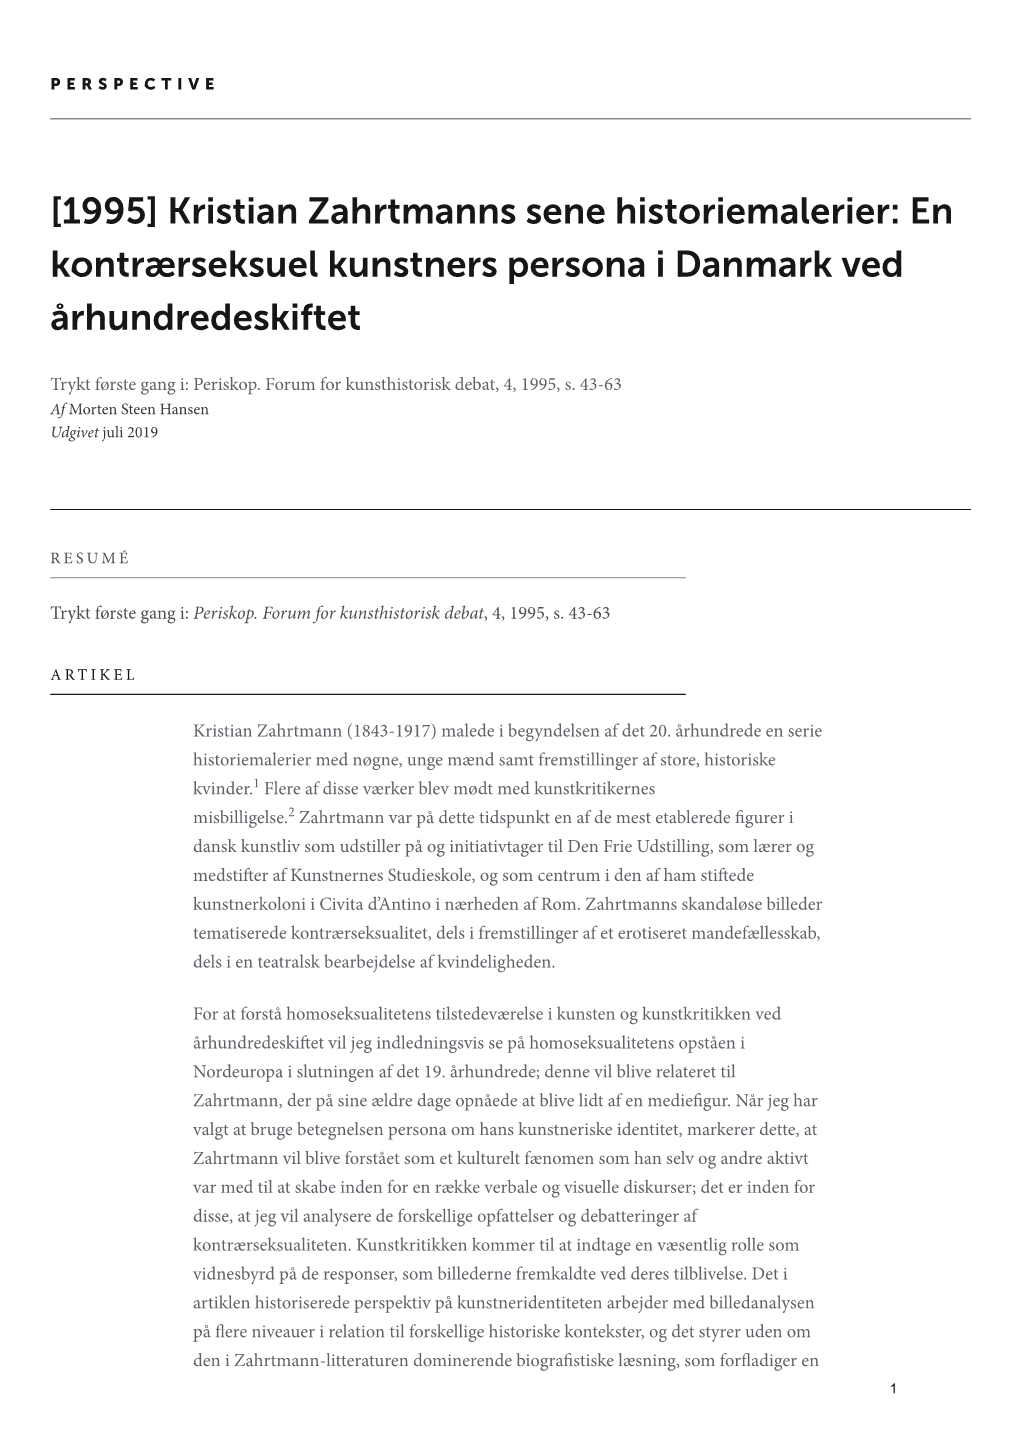 Kristian Zahrtmanns Sene Historiemalerier: En Kontrærseksuel Kunstners Persona I Danmark Ved Århundredeskiftet